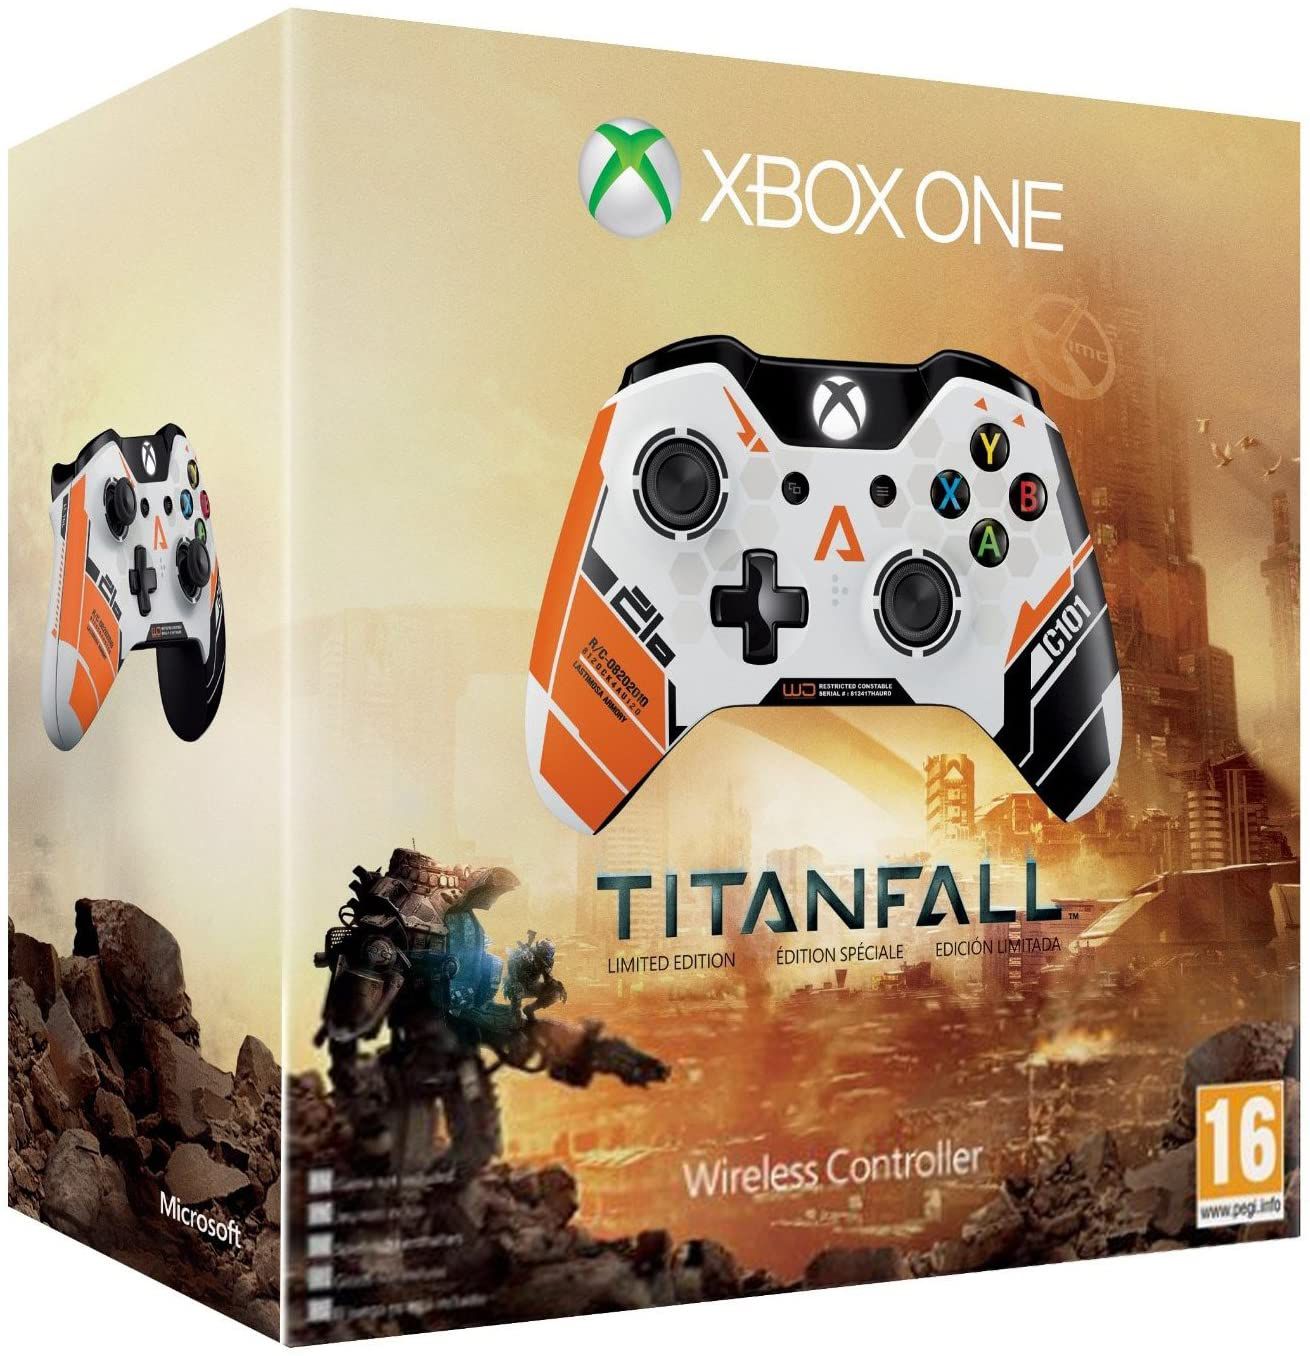 Titanfall 2 confirmado para Xbox One, PS4 e PC